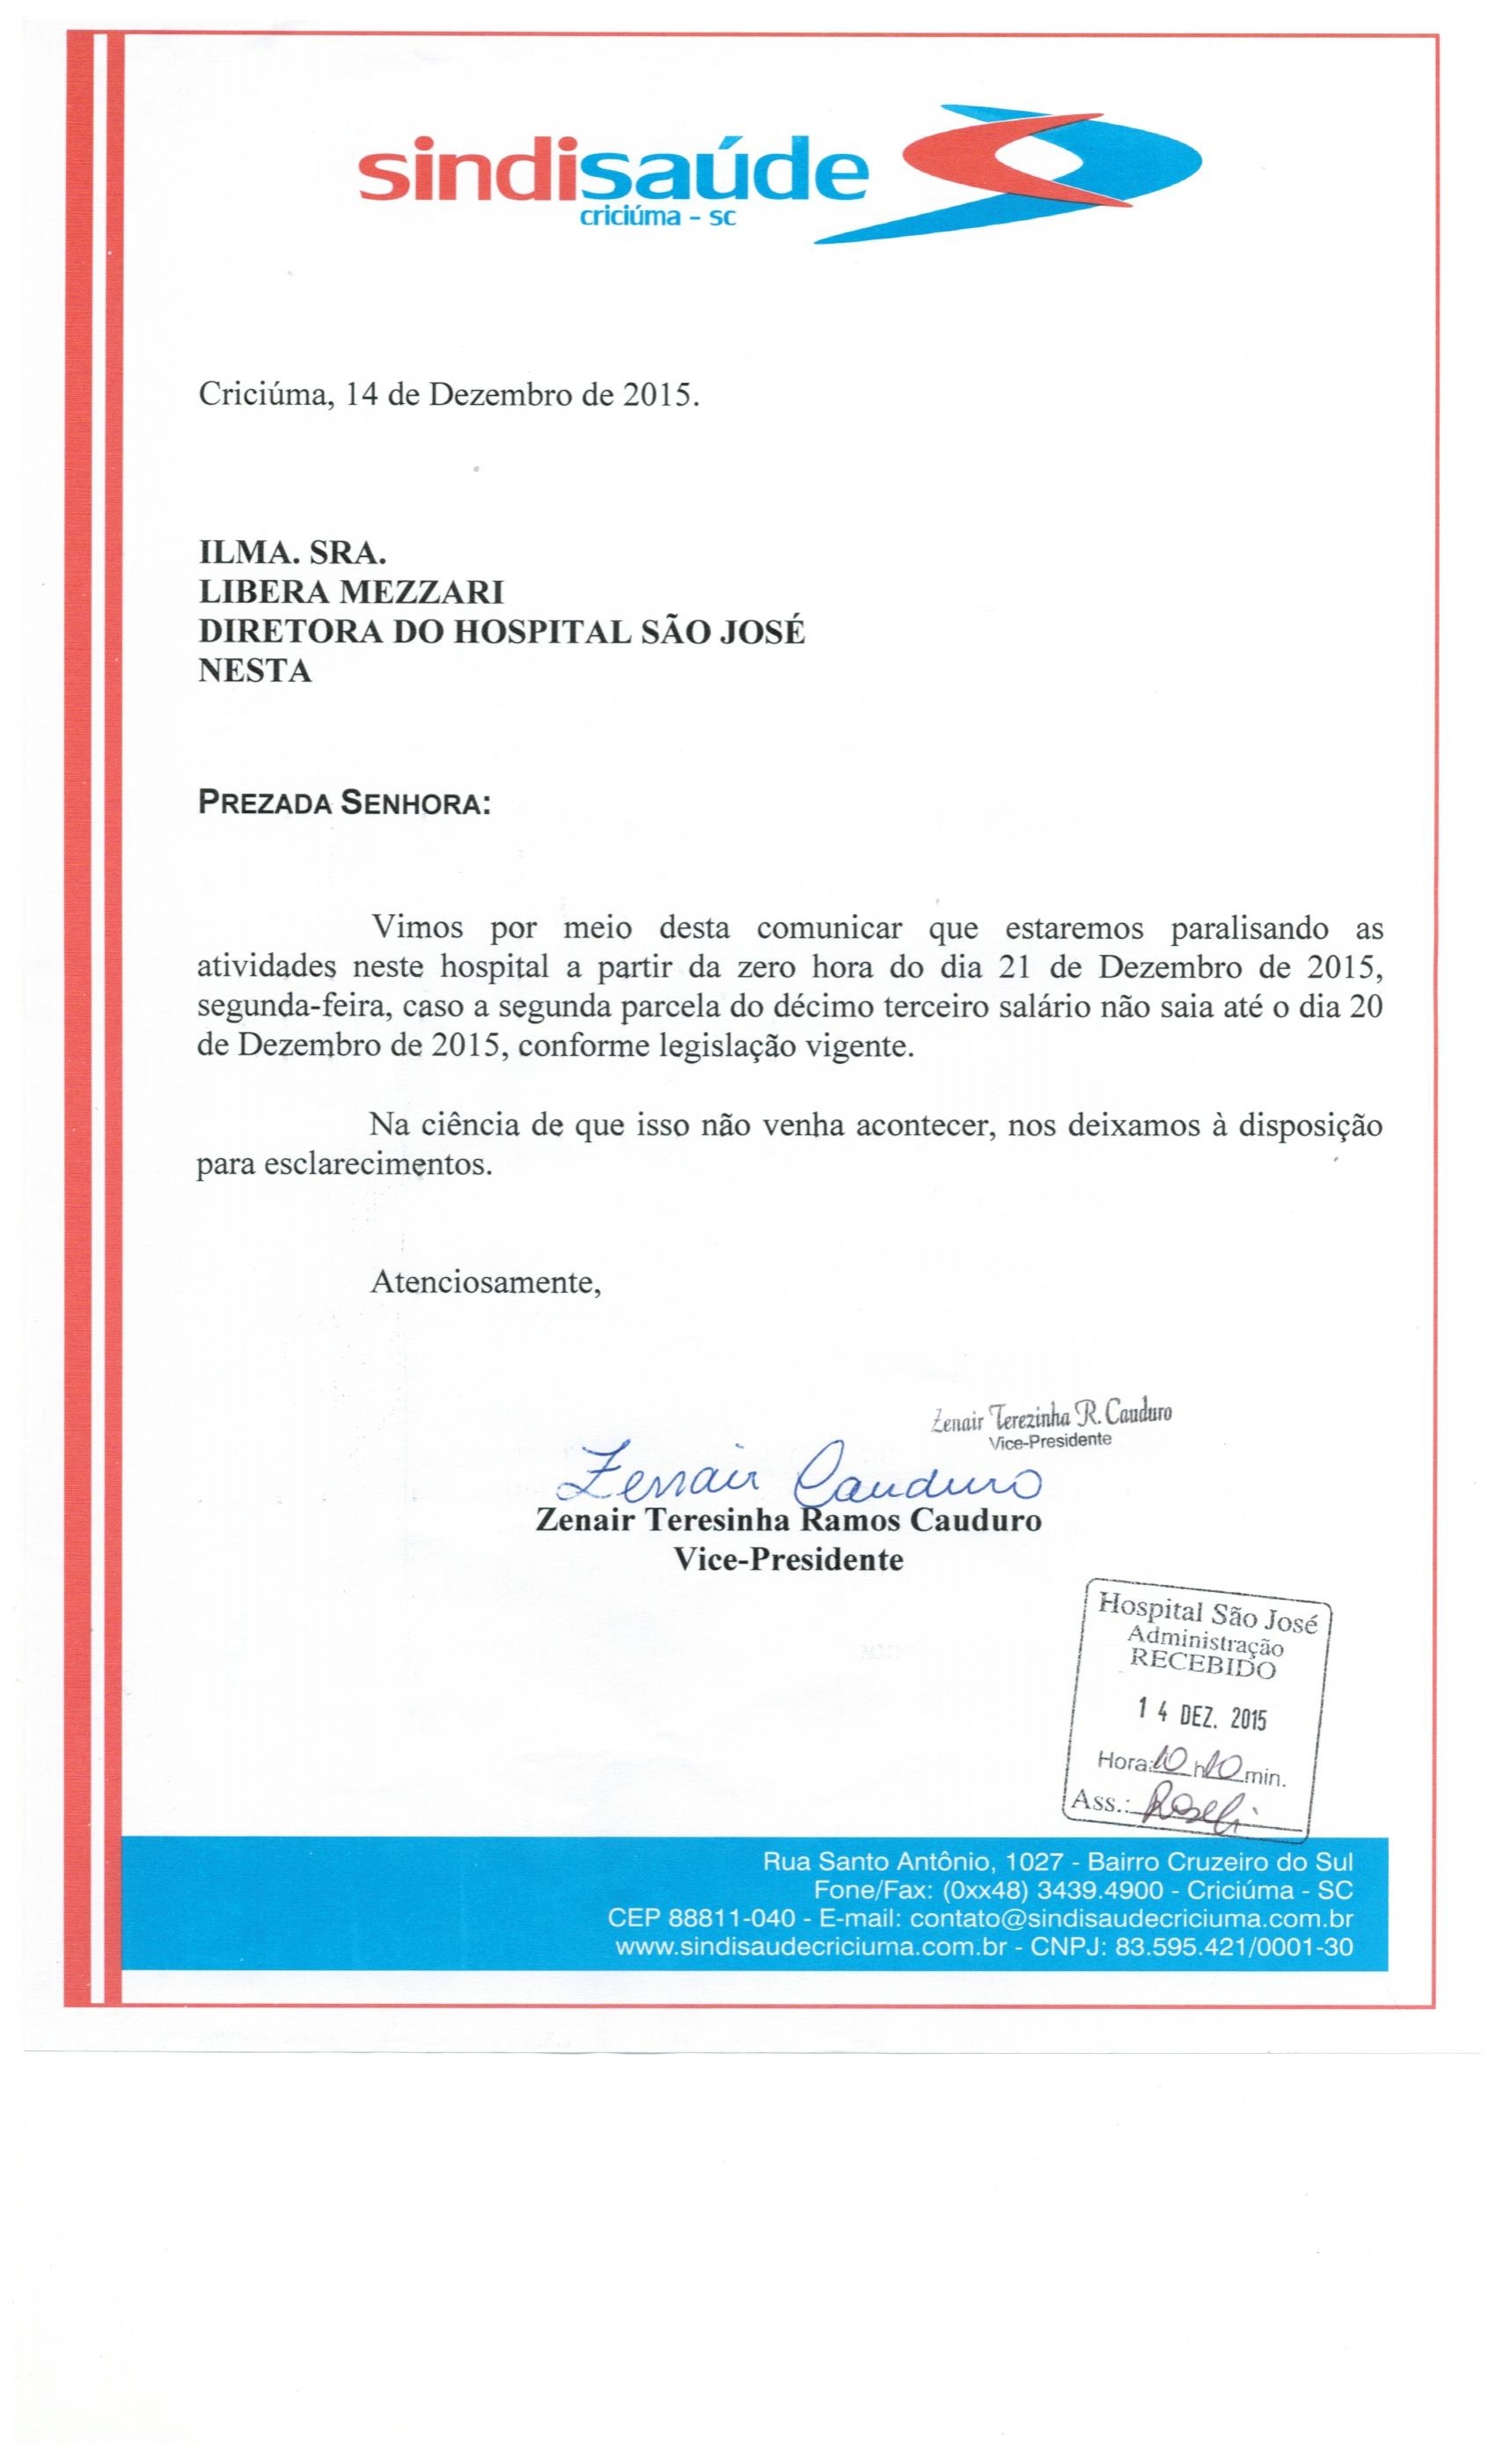 Ofício de comunicação de greve caso não seja efetuado o pag. da 2ª parc. do 13º salário até o dia 20/12/2015 - HSJ